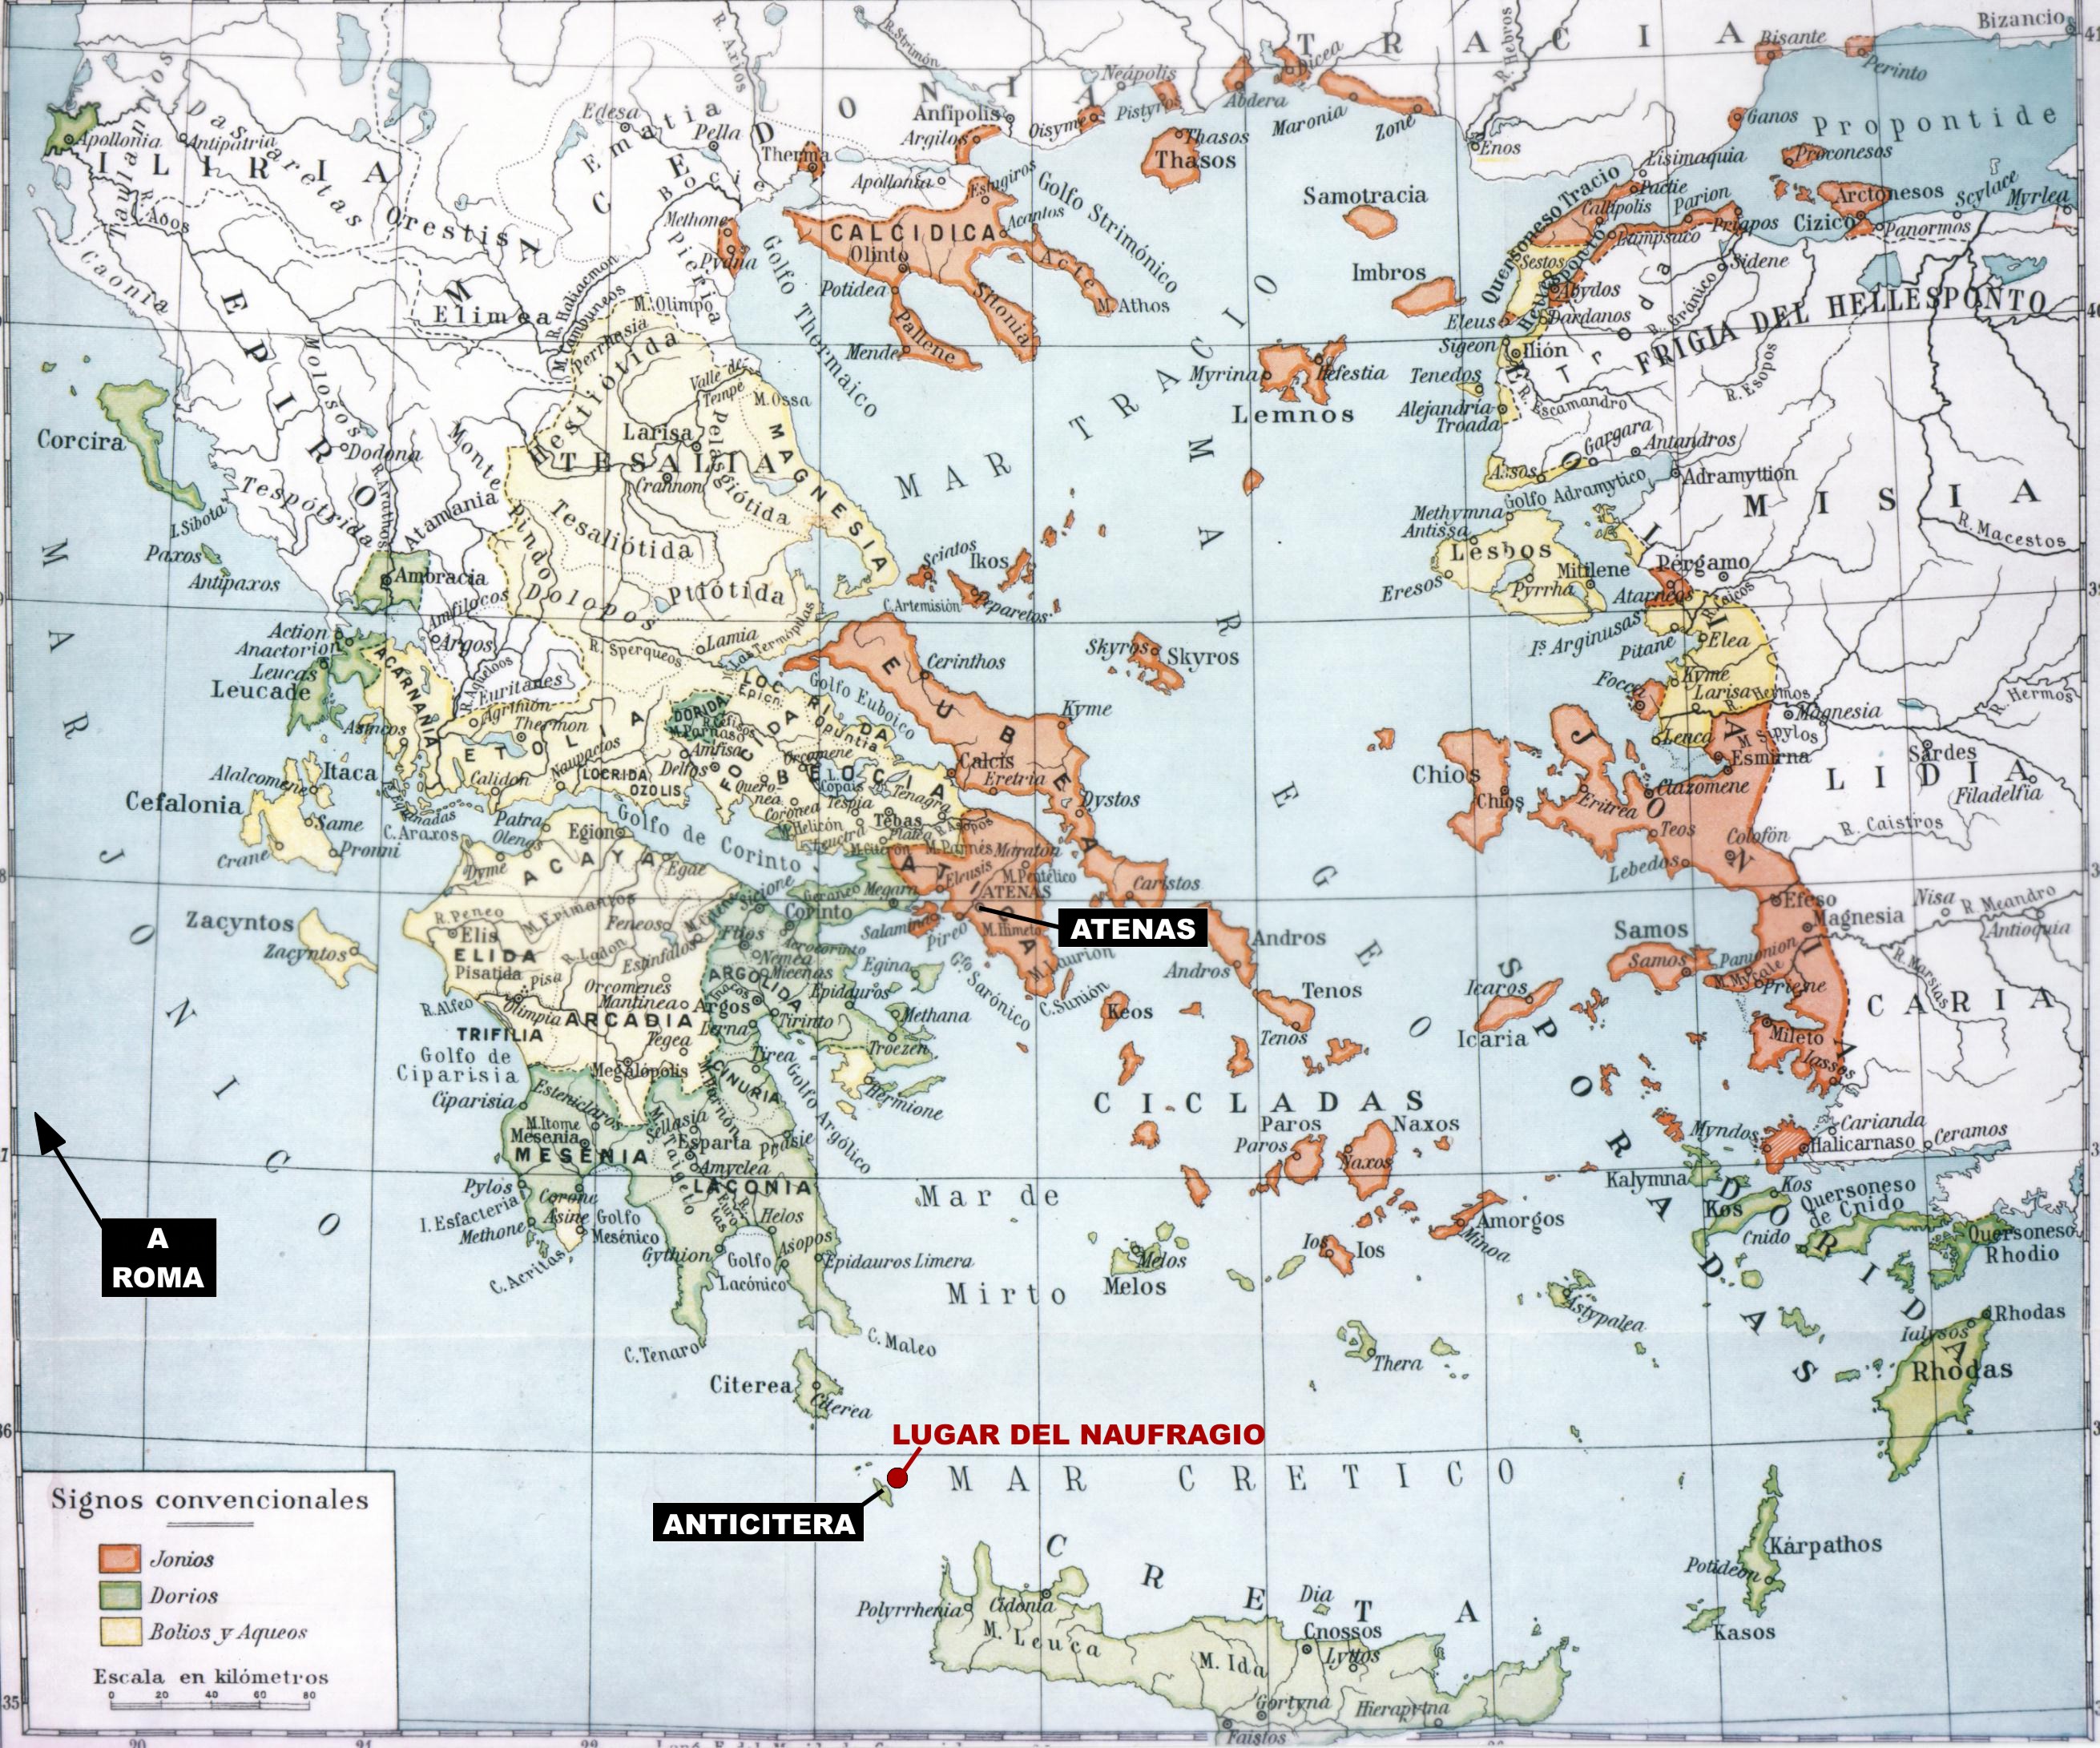 Mapa del naufragio de Anticitera.